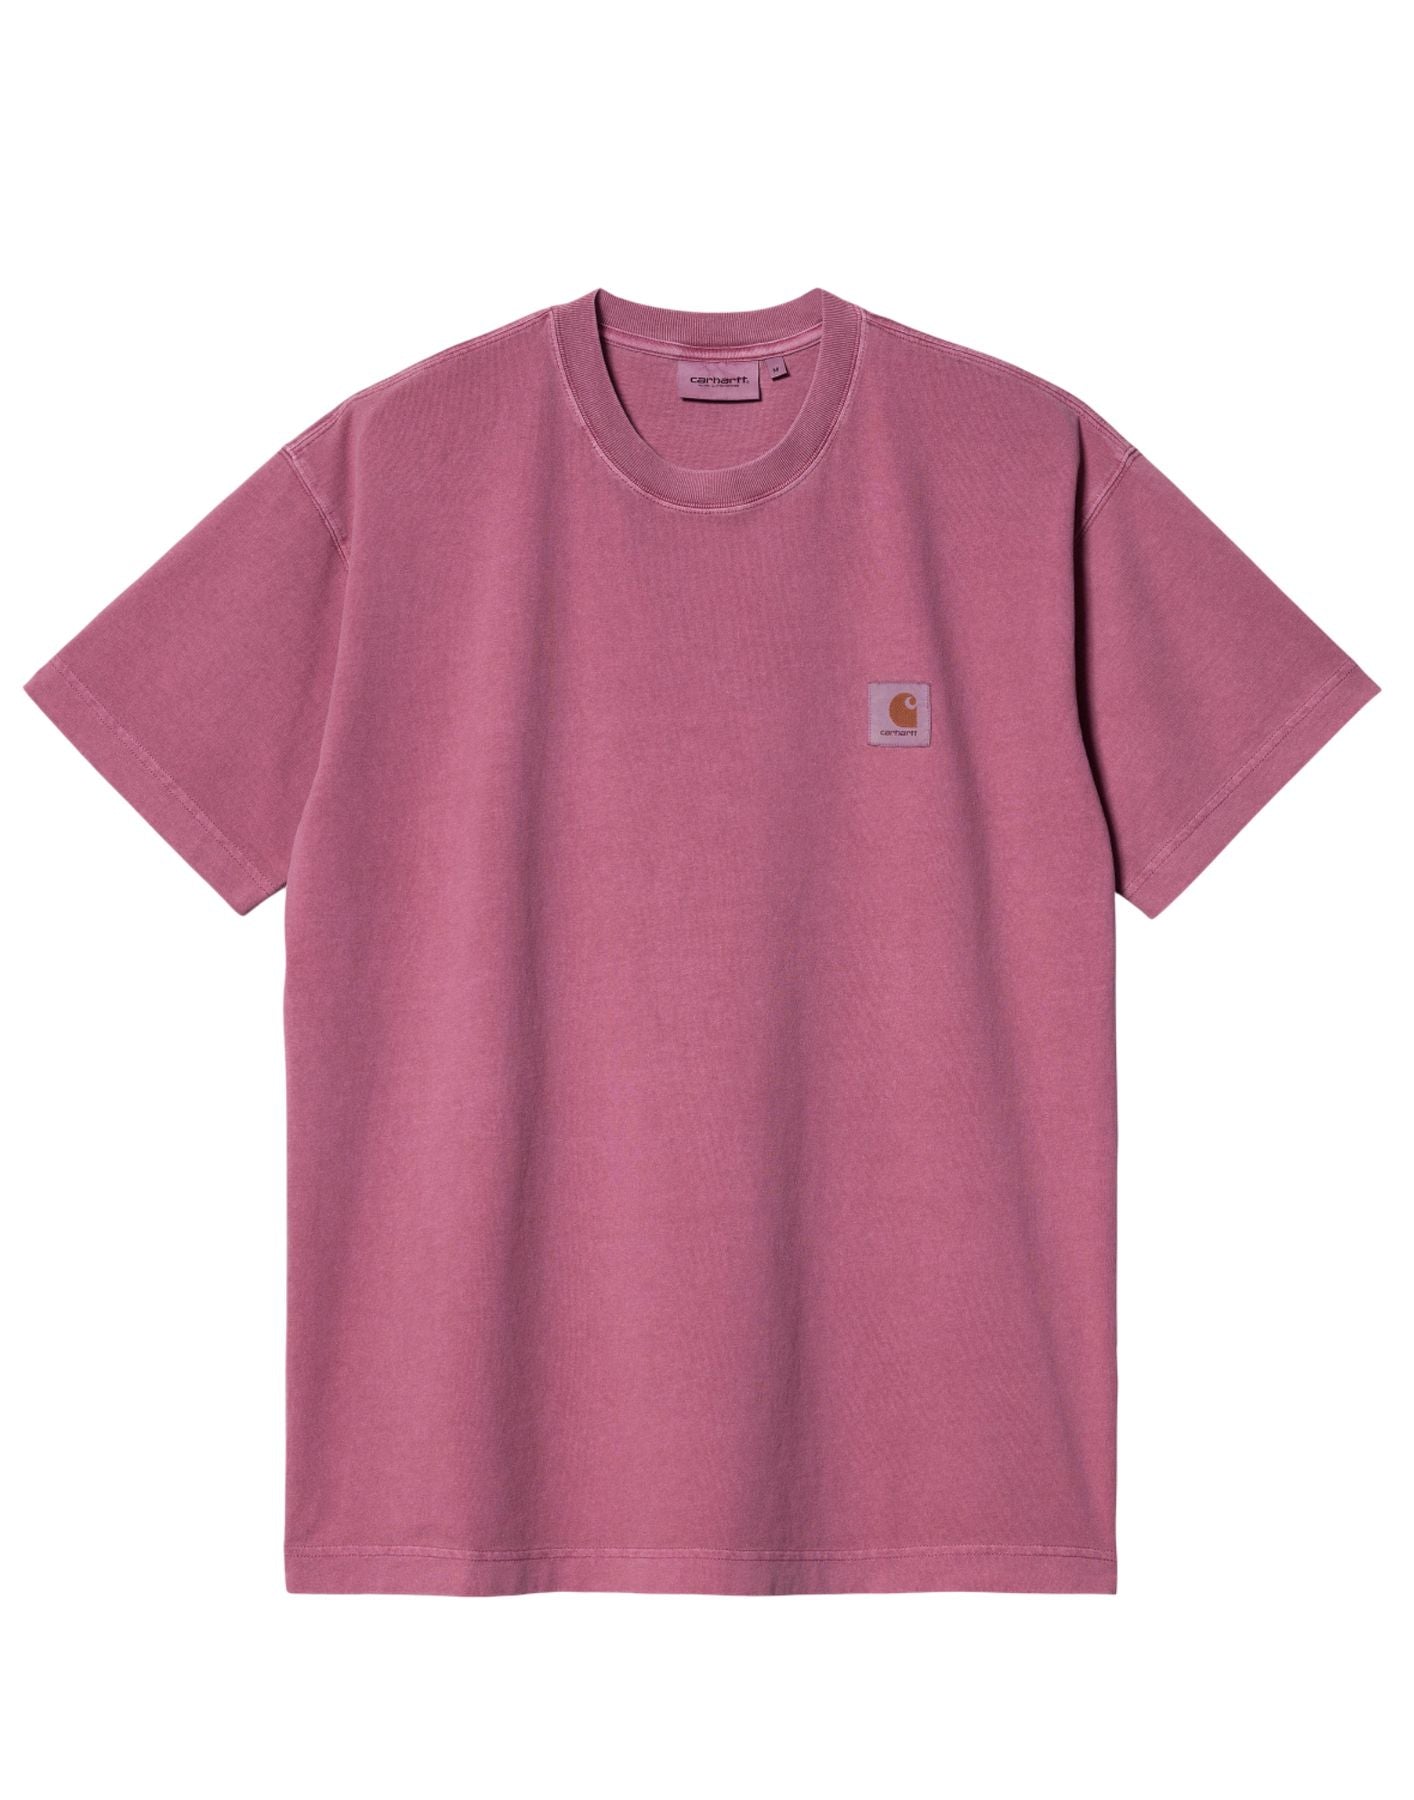 Camiseta para el hombre i029949 1yt.gd rosa CARHARTT WIP